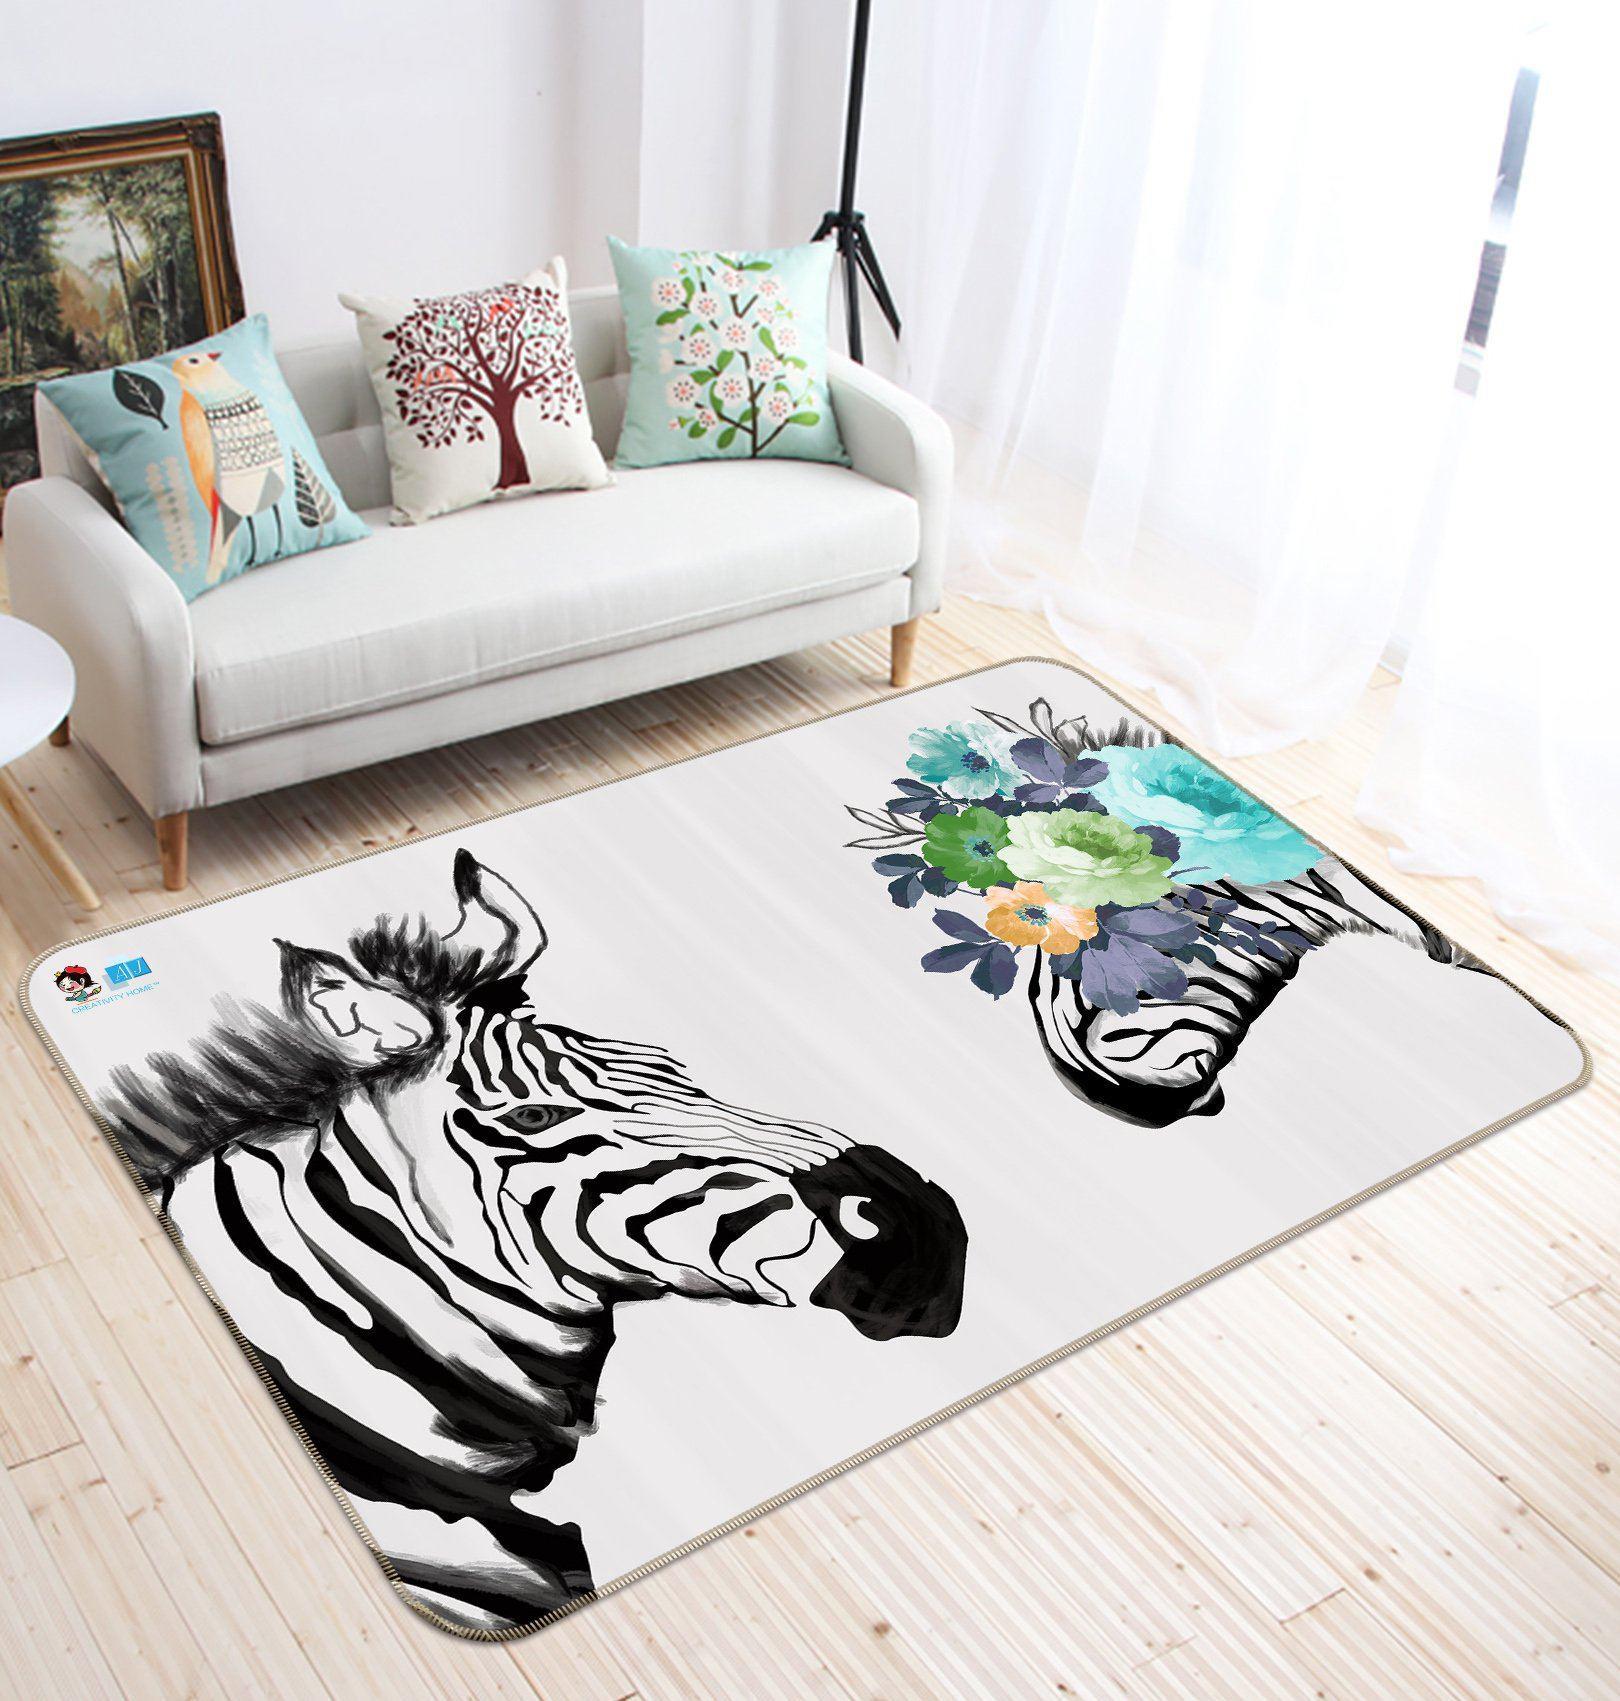 3D Home Carpet Zebra Vision 598 Non Slip Rug Mat, 120cmx180cm (47.2"x70.9")